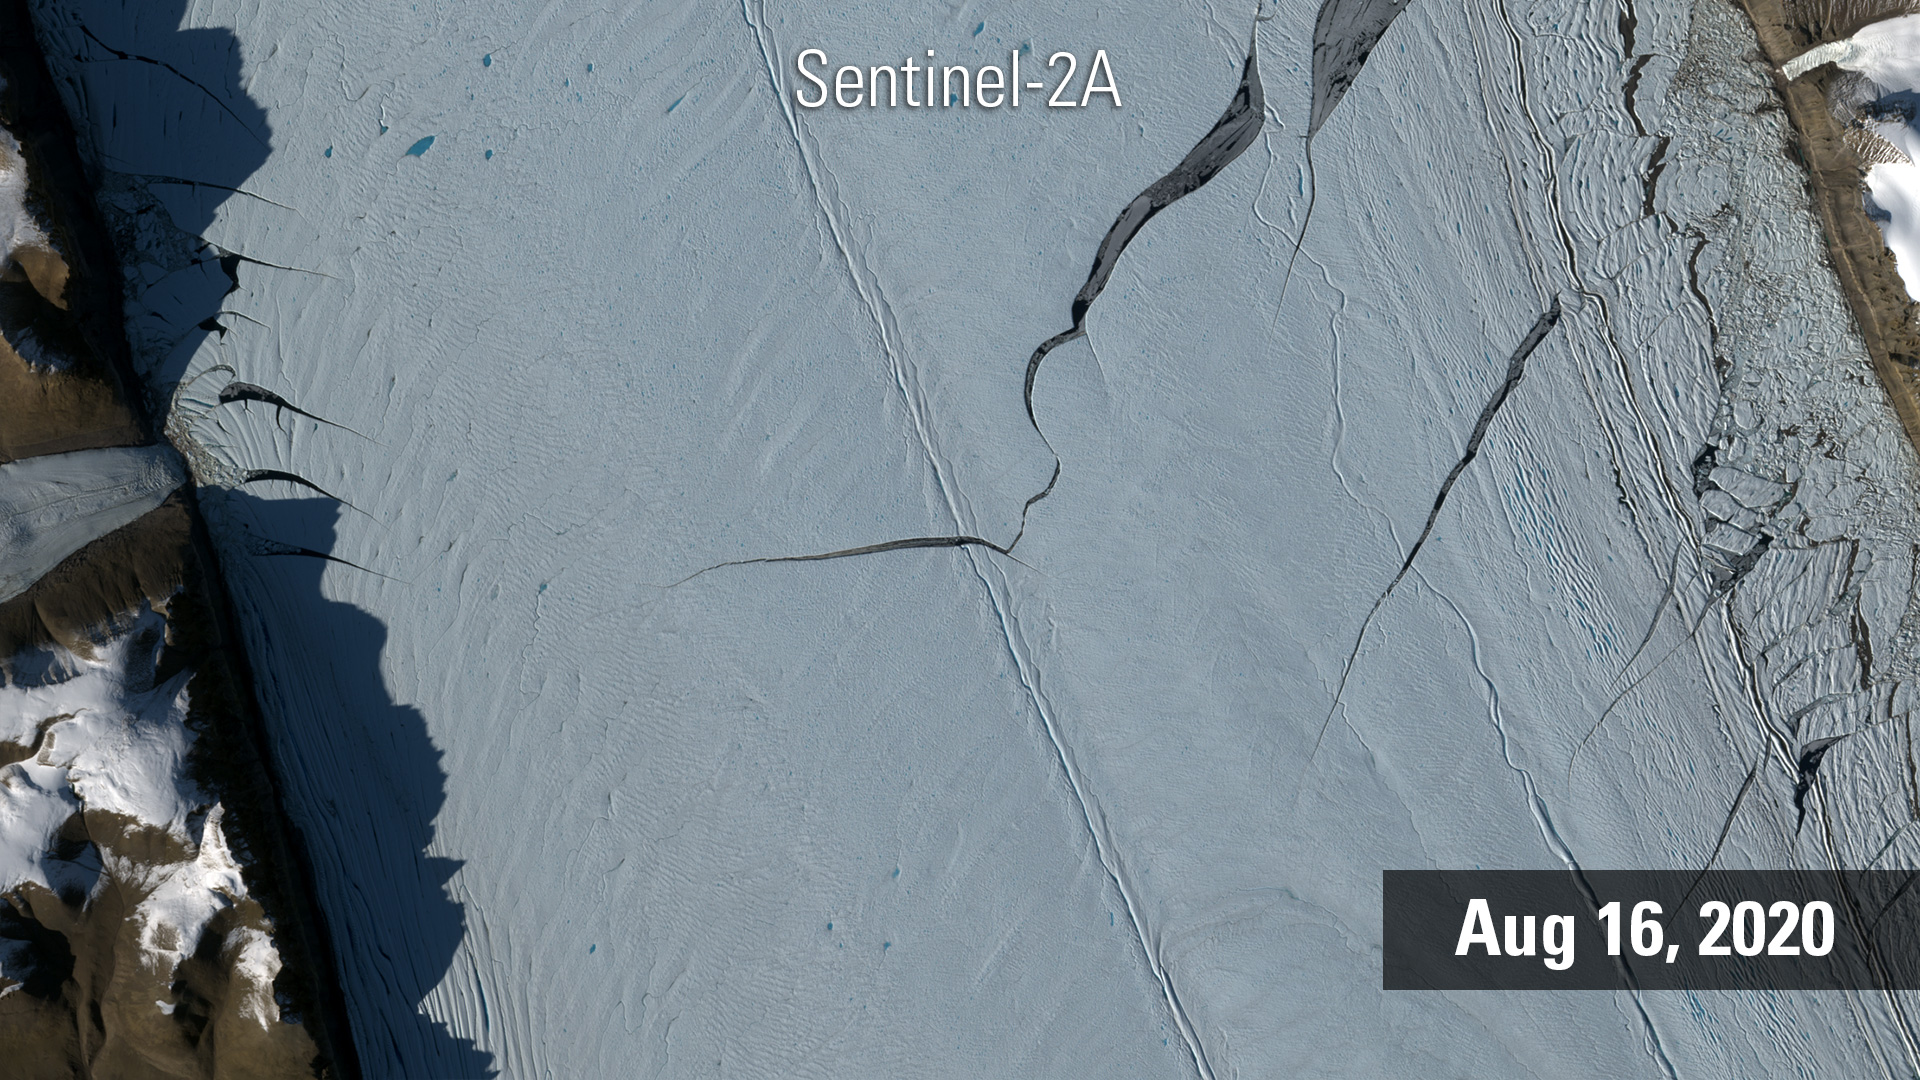 Petermann Glacier, 2020 Update after